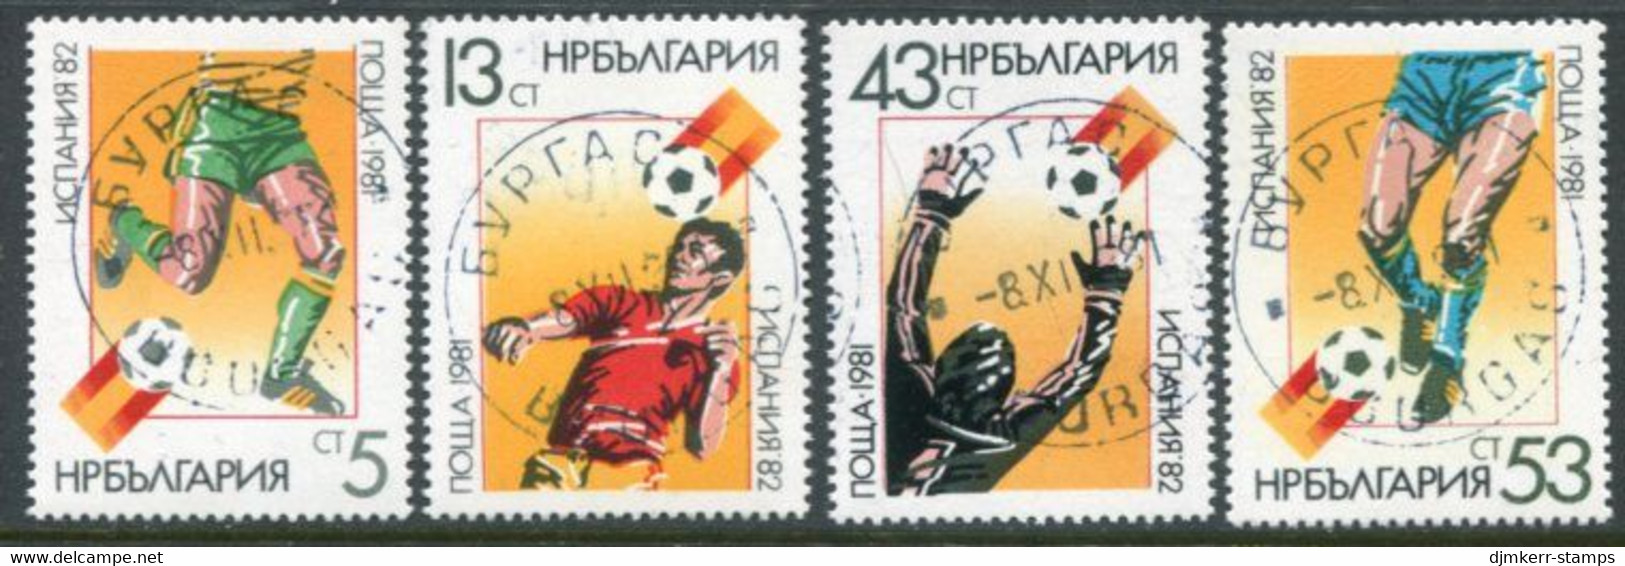 BULGARIA 1981 Football World Cup Used.  Michel 3053-56 - Gebruikt